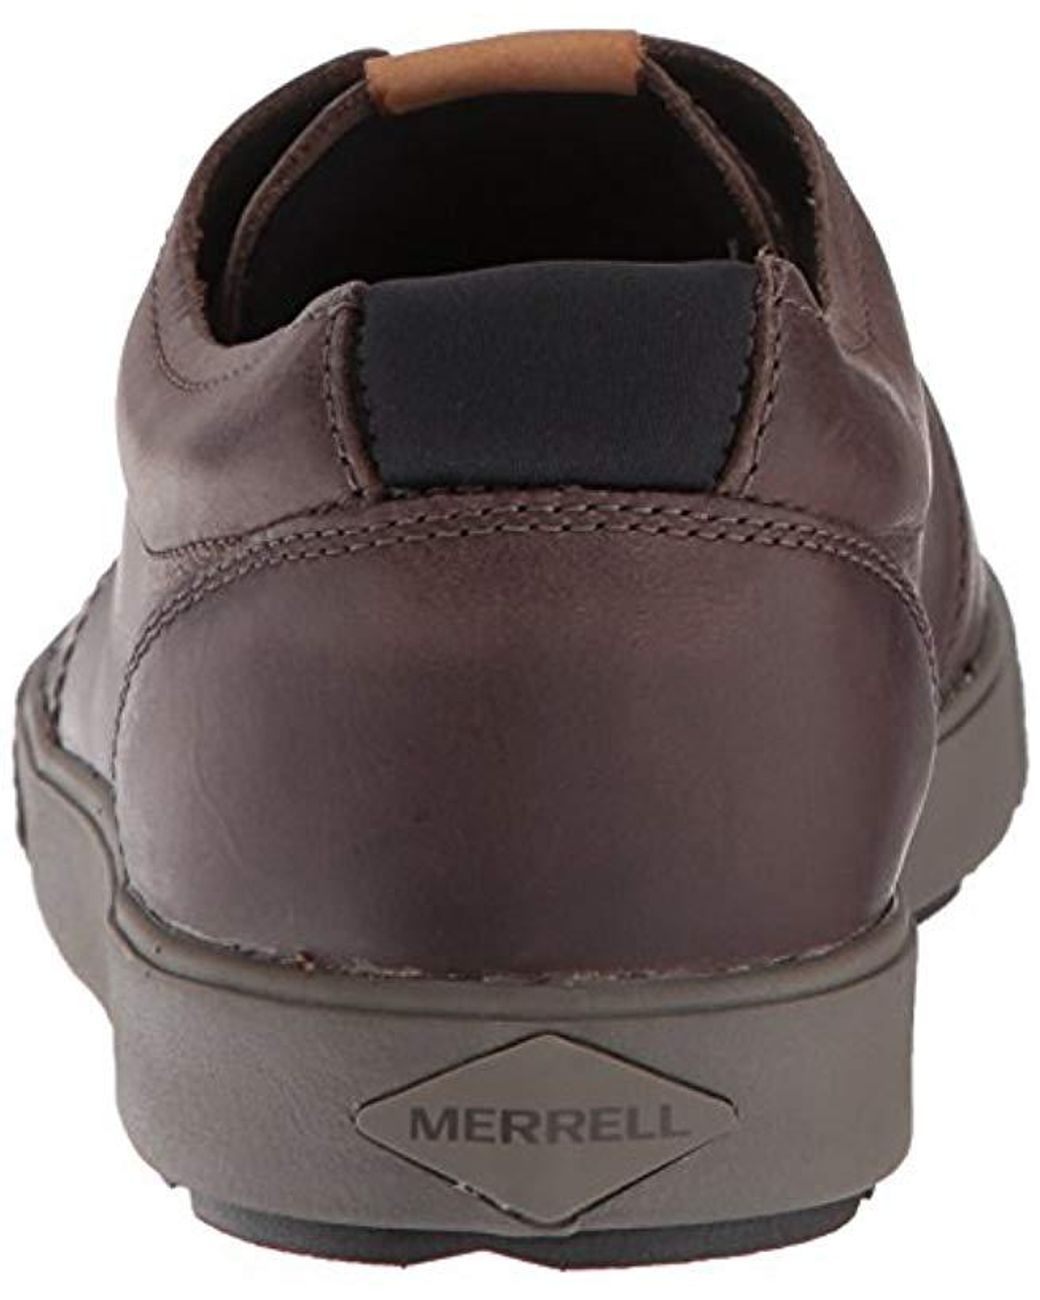 merrell men's barkley oxford